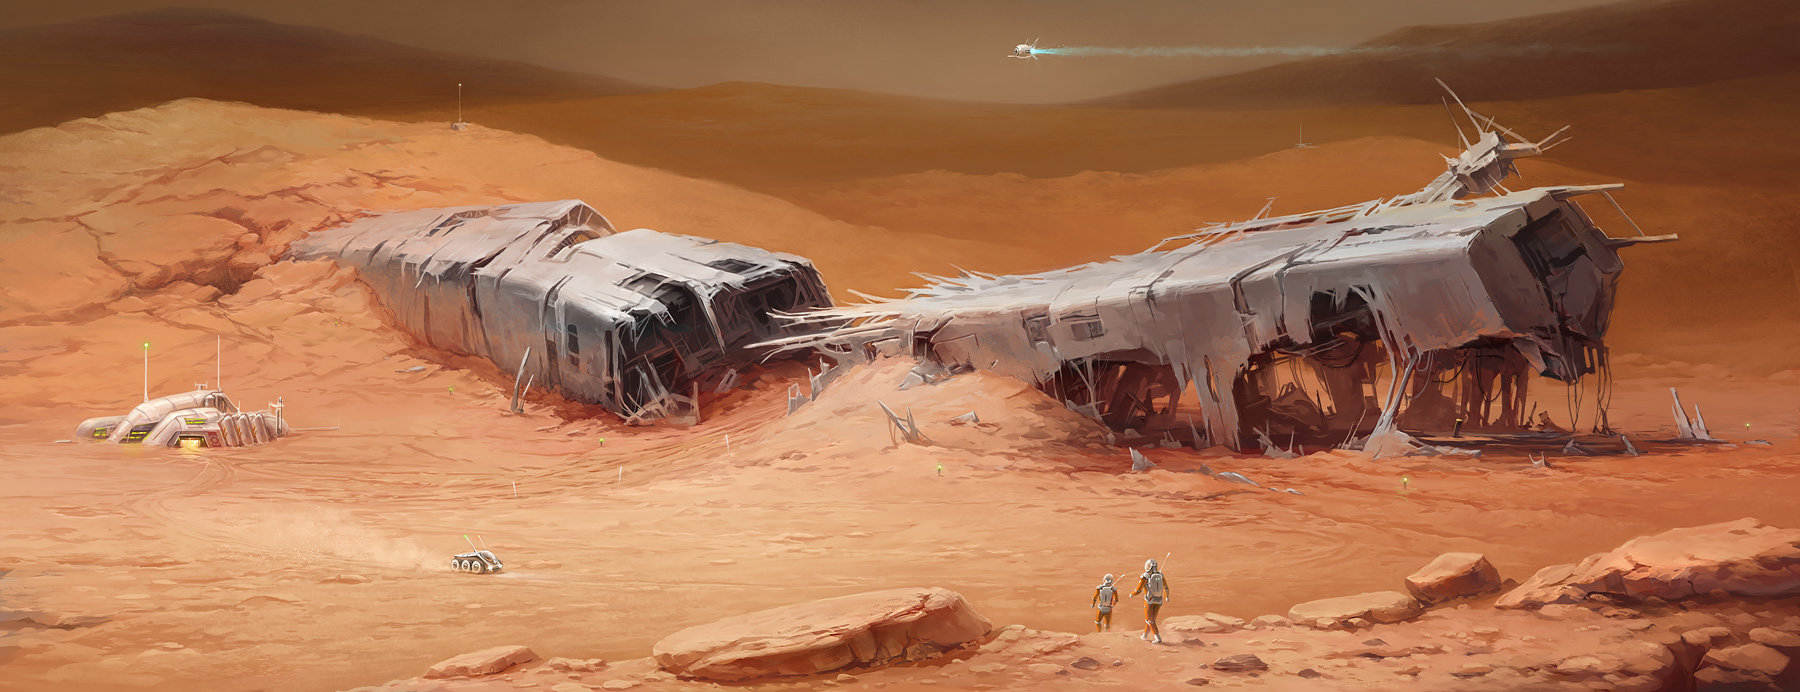 Картины фантастика Марс развалины